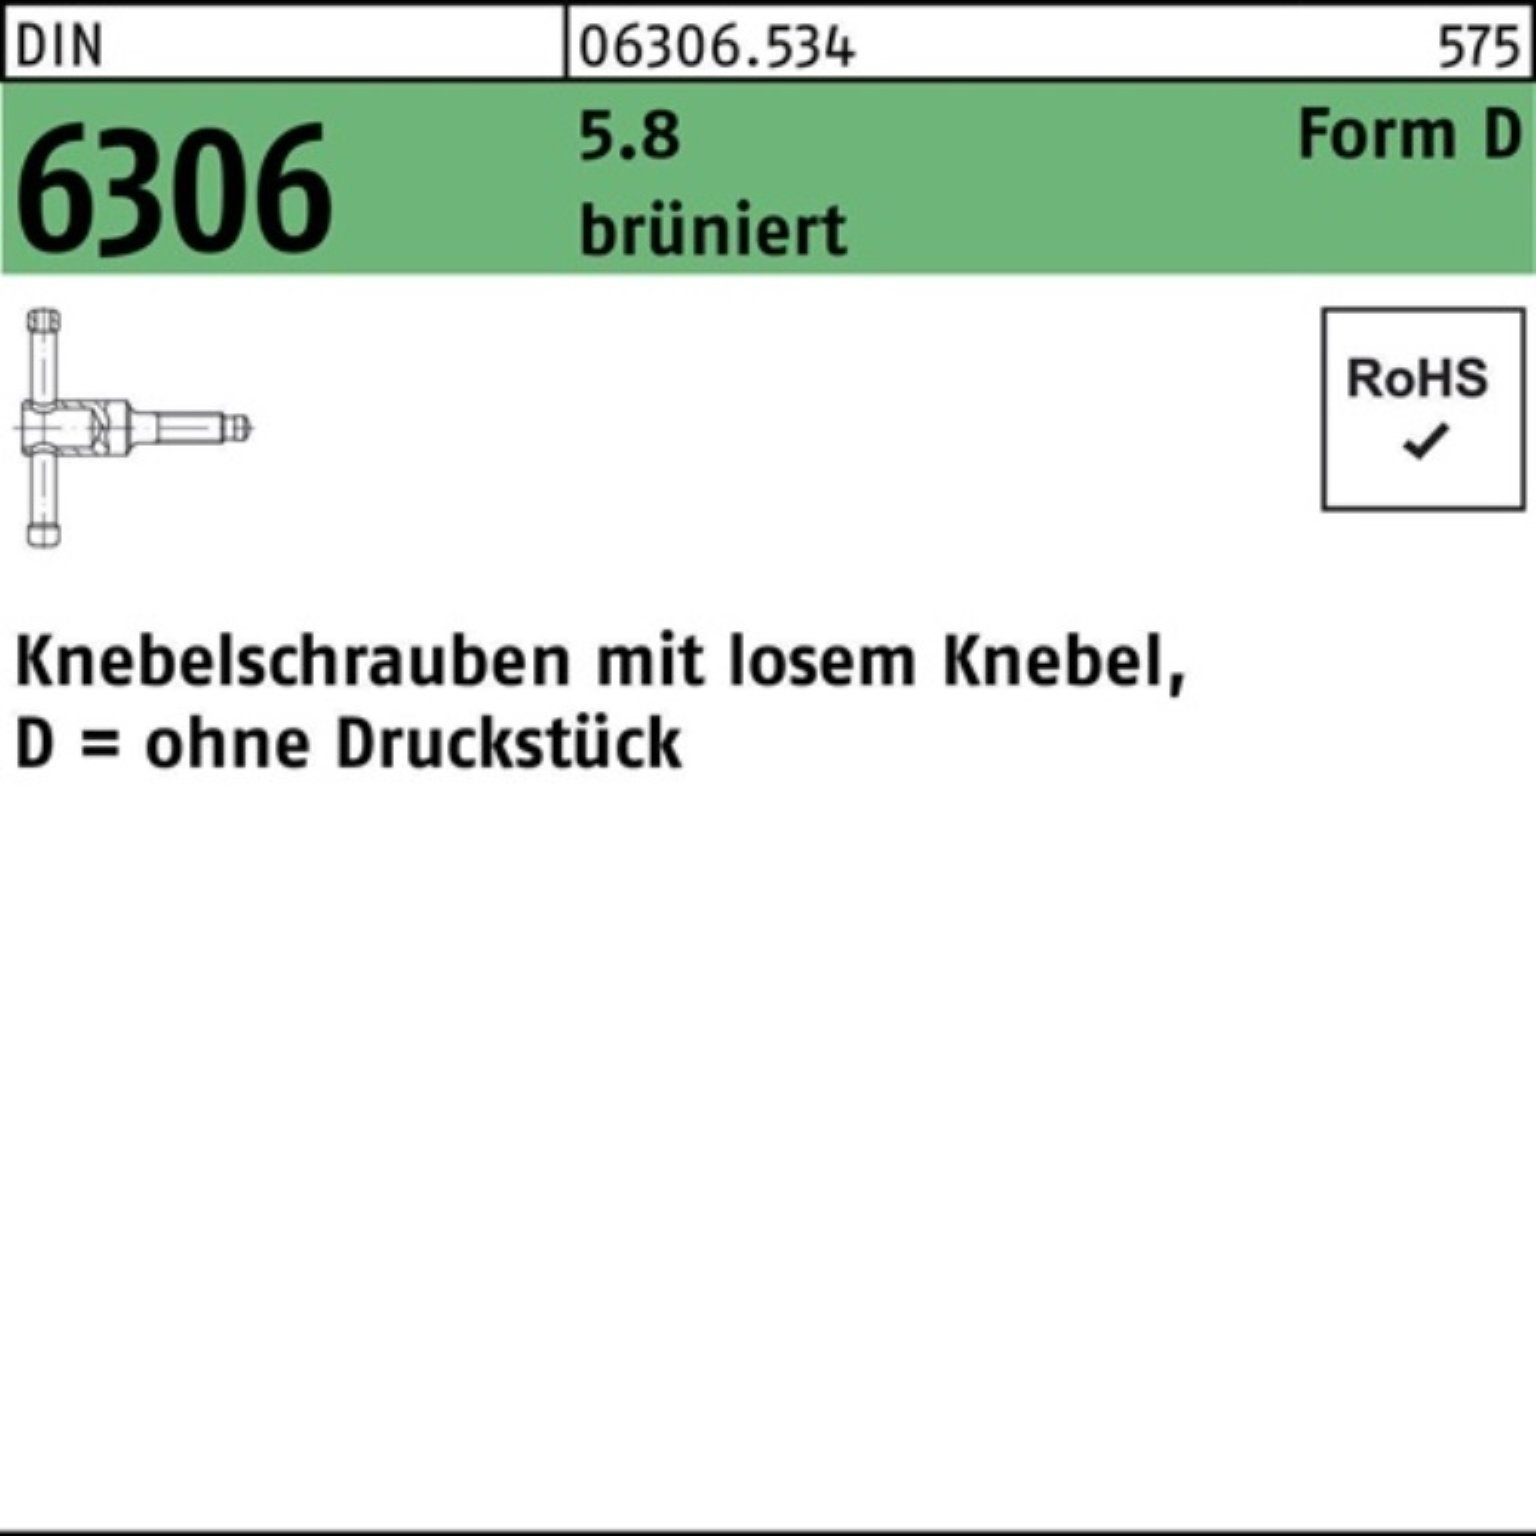 90 Knebel Pack Knebelschraube 100er DIN Reyher Schraube losen 20x 6306 5.8 DM brünier